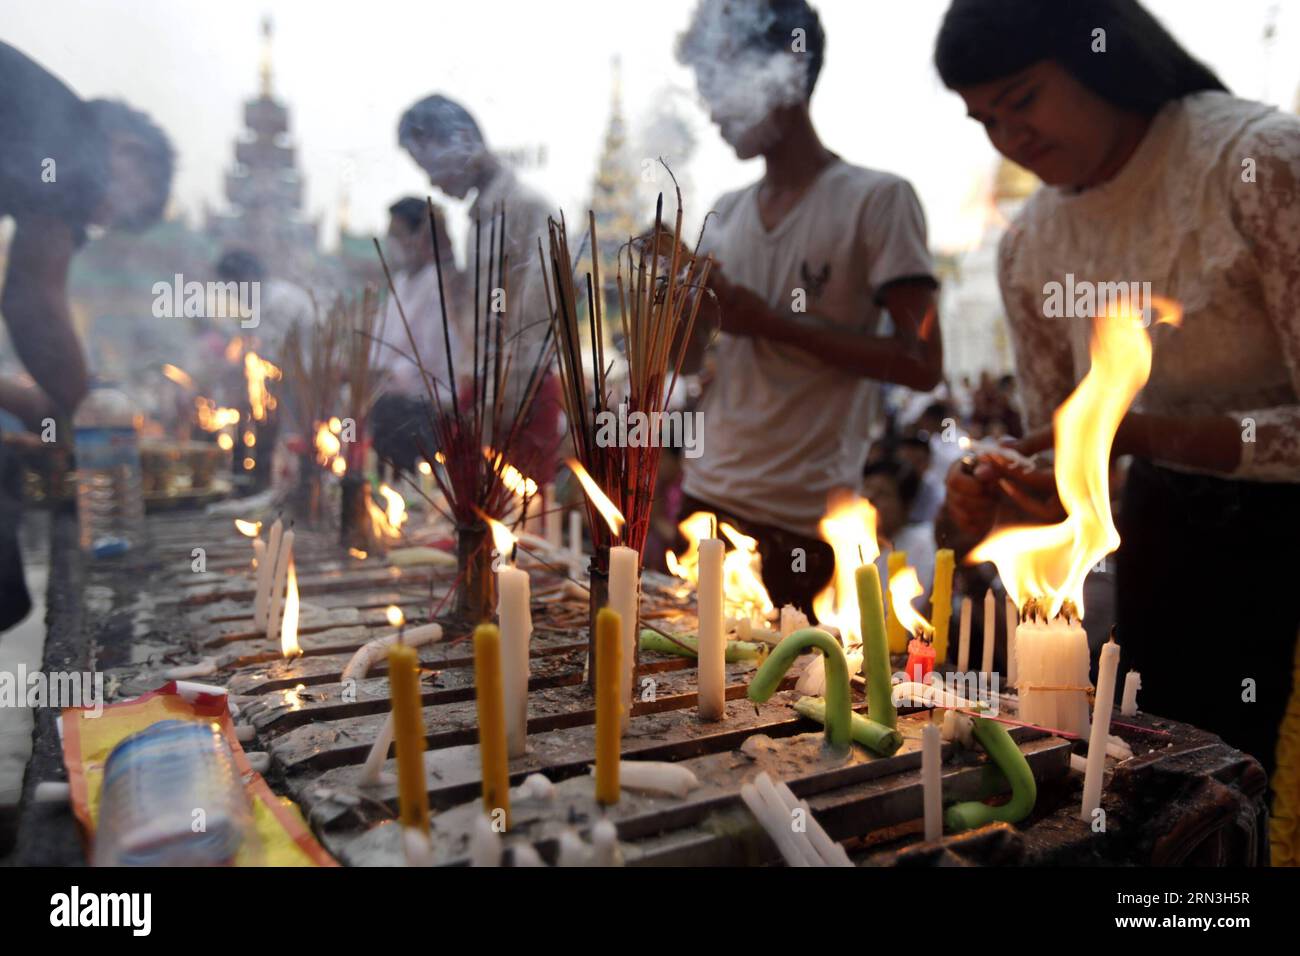 (150417) -- YANGON, 17 avril 2015 -- les gens allument des bougies et brûlent des bâtons d'encens pour prier le premier jour du nouvel an du Myanmar à la célèbre pagode Shwedagon à Yangon, Myanmar, le 17 avril 2015. Le premier jour de la nouvelle année du Myanmar, les gens dans le pays avaient l'habitude d'accomplir des actes méritoires et les bouddhistes, qui représentent la majorité de la population, vont habituellement dans les pagodes, monastères et centres de méditation où ils pratiquent la méditation. MYANMAR-YANGON-NOUVEL AN UxAung PUBLICATIONxNOTxINxCHN Yangon avril 17 2015 célébrités allumer des bougies et brûler des bâtons d'encens pour prier SUR les fièvres Banque D'Images